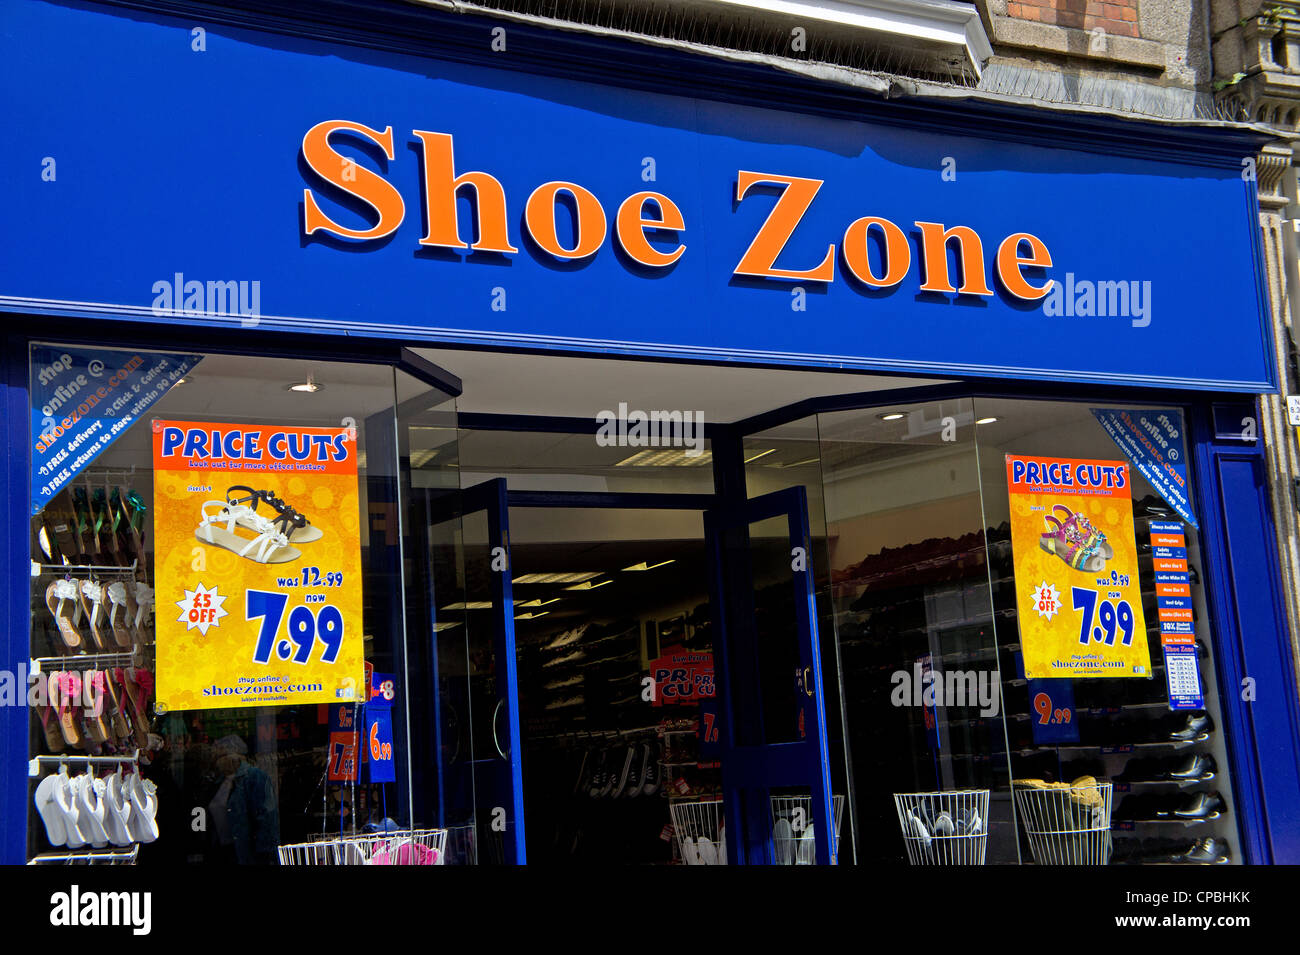 Shoe zone shop immagini e fotografie stock ad alta risoluzione - Alamy